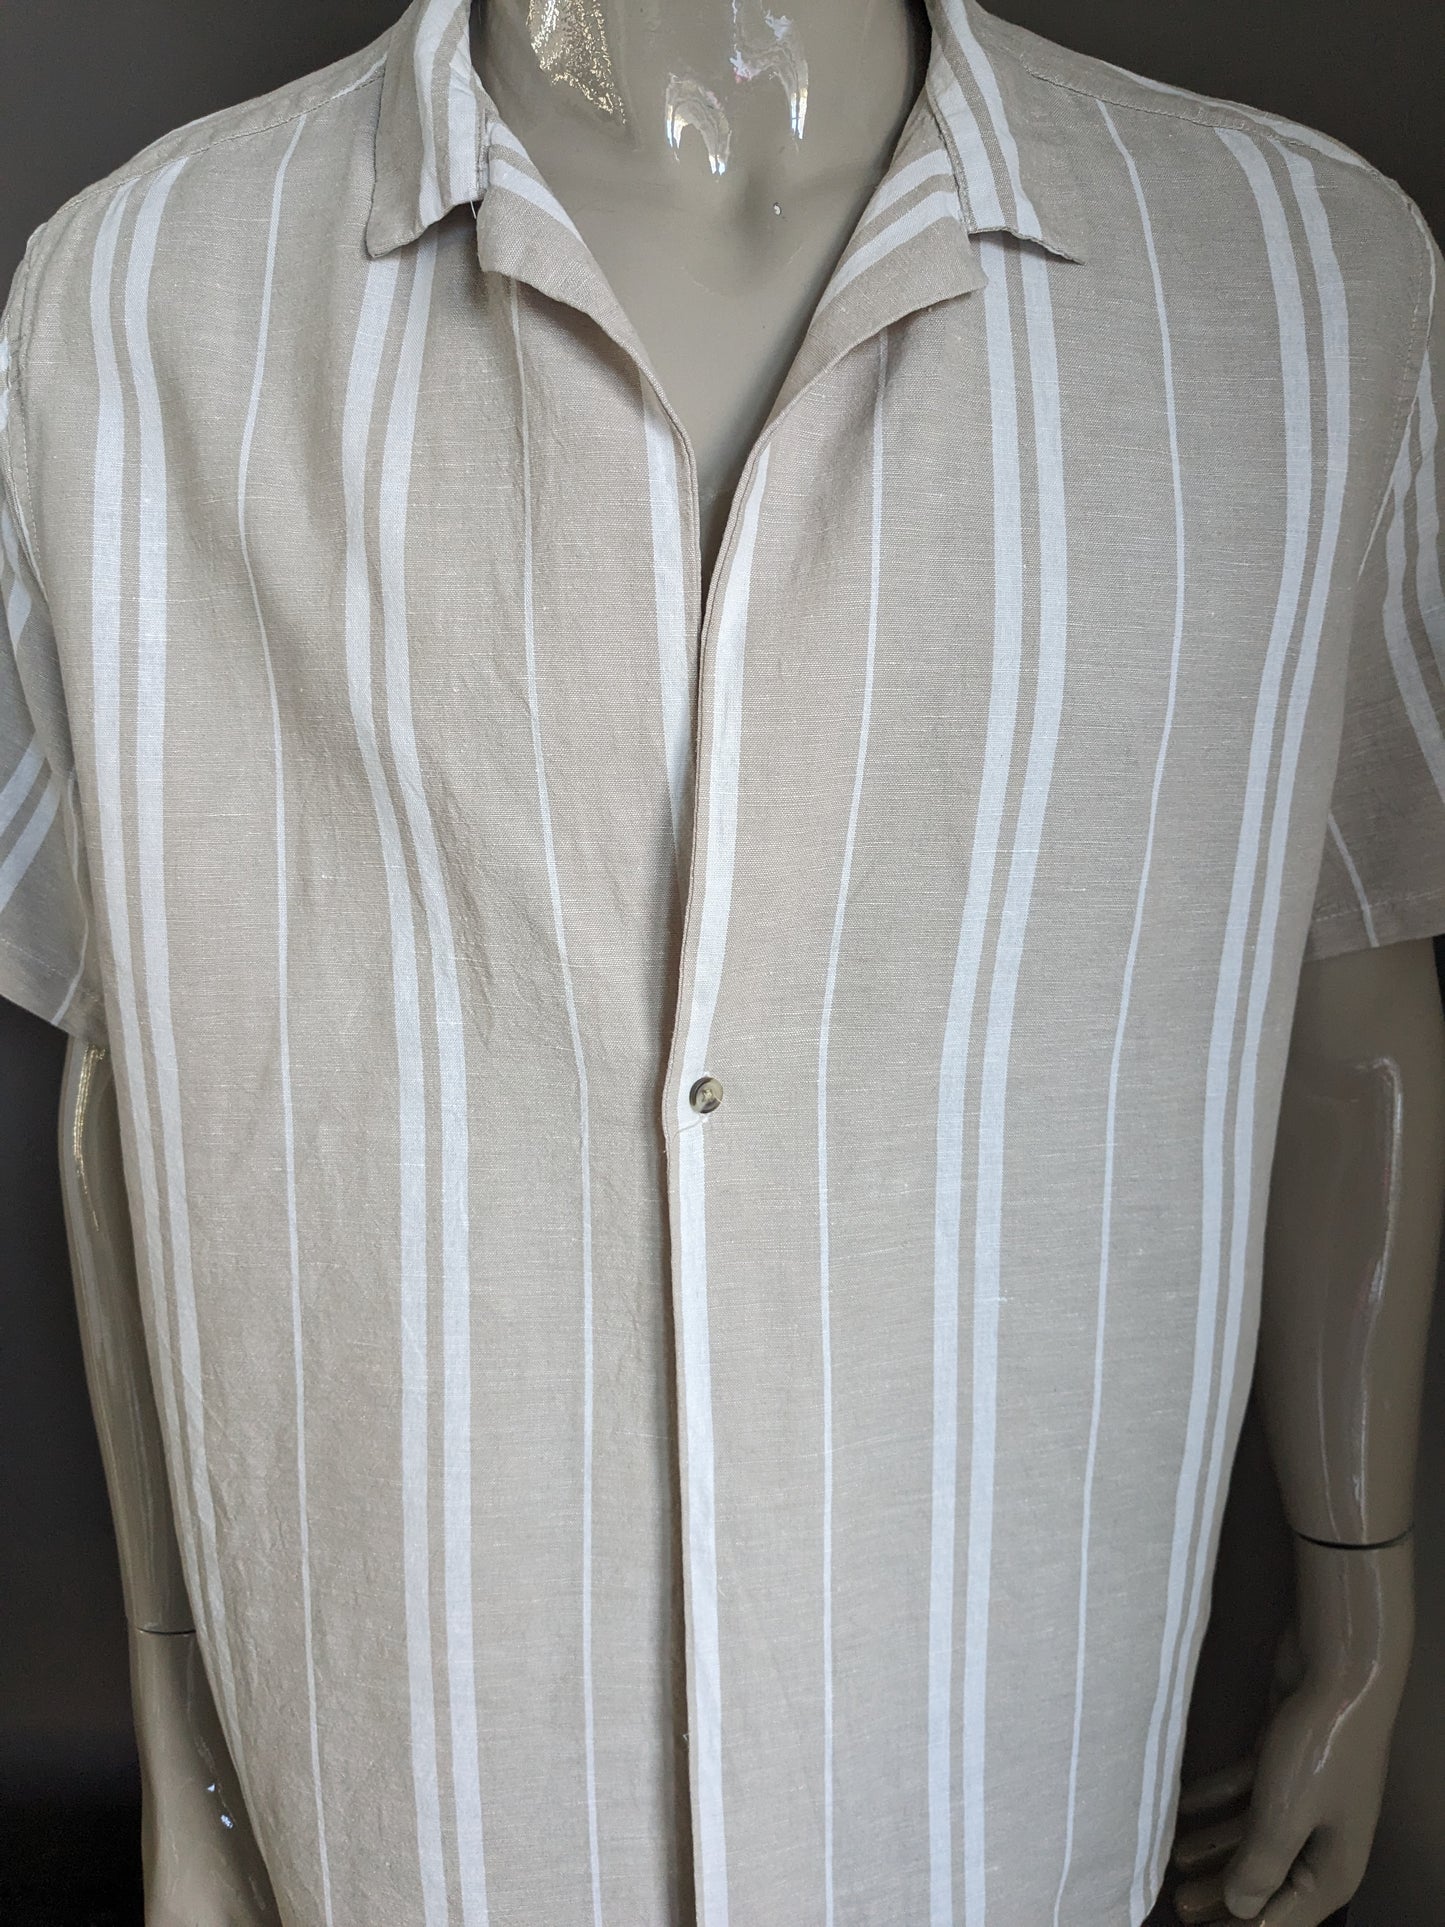 Asos design linen shirt short sleeve with 1 knot. Beige white striped. Size 2XL / XXL. 53% linen.